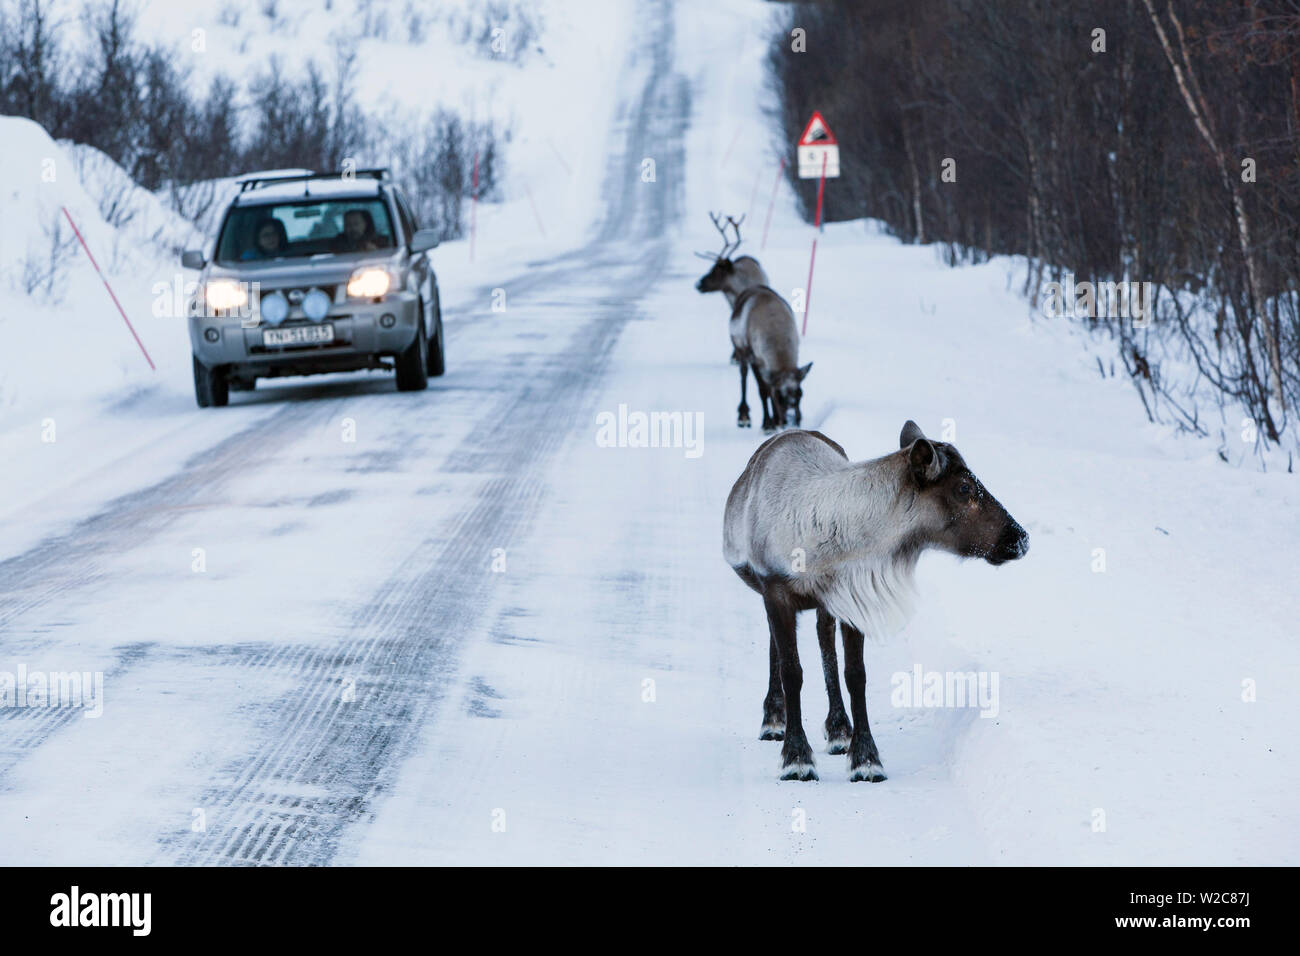 Reindeer, Kvaloya, Troms region, Norway Stock Photo